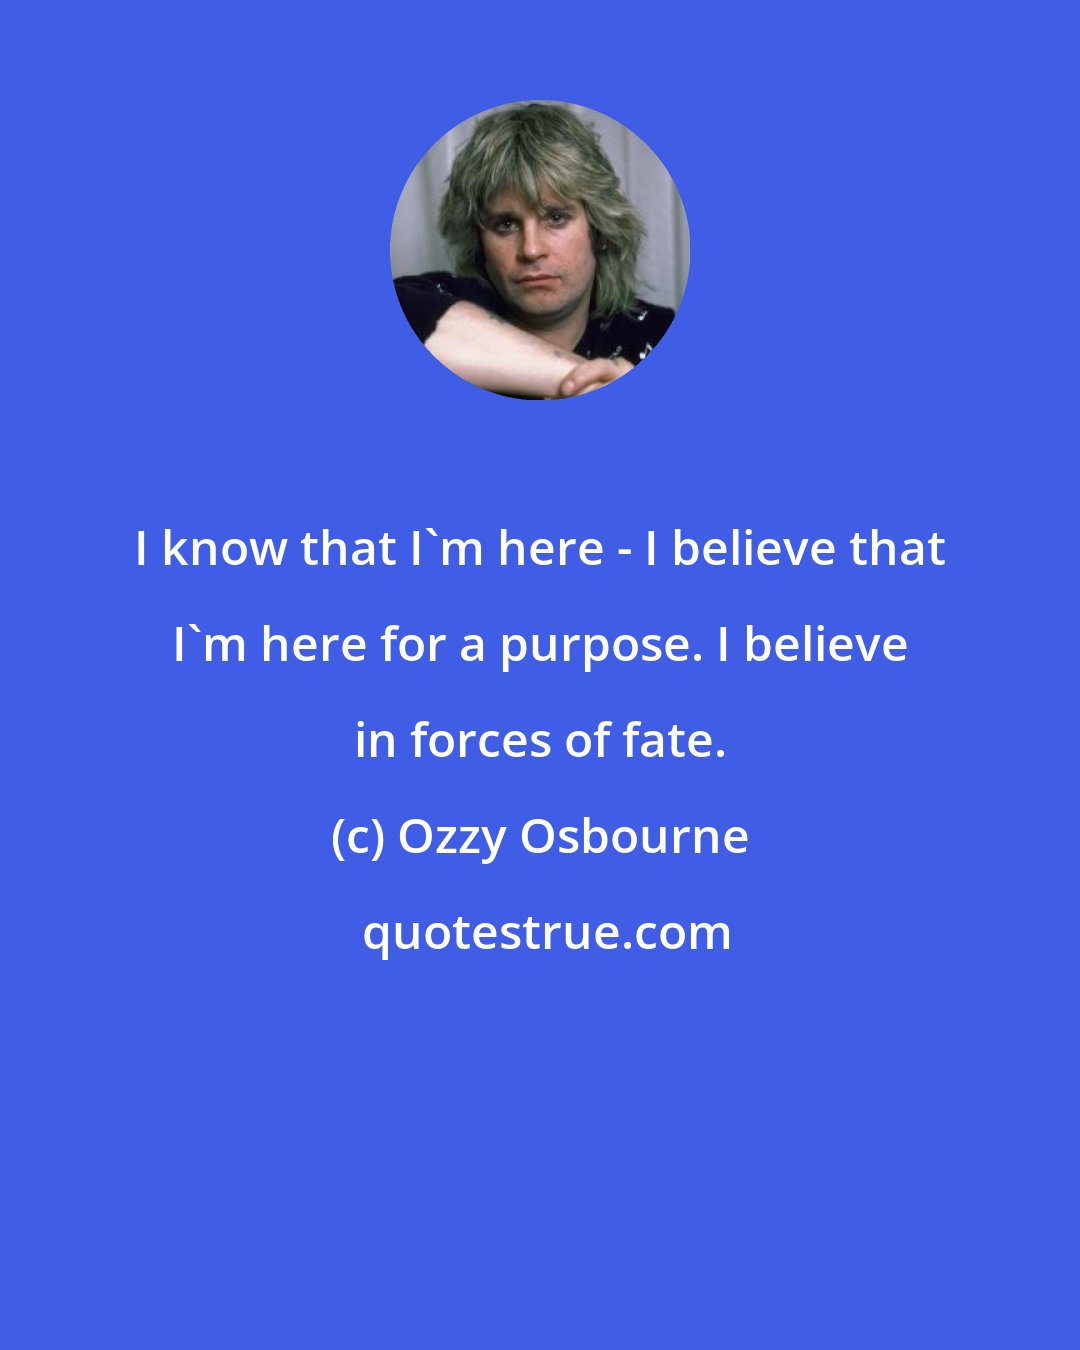 Ozzy Osbourne: I know that I'm here - I believe that I'm here for a purpose. I believe in forces of fate.